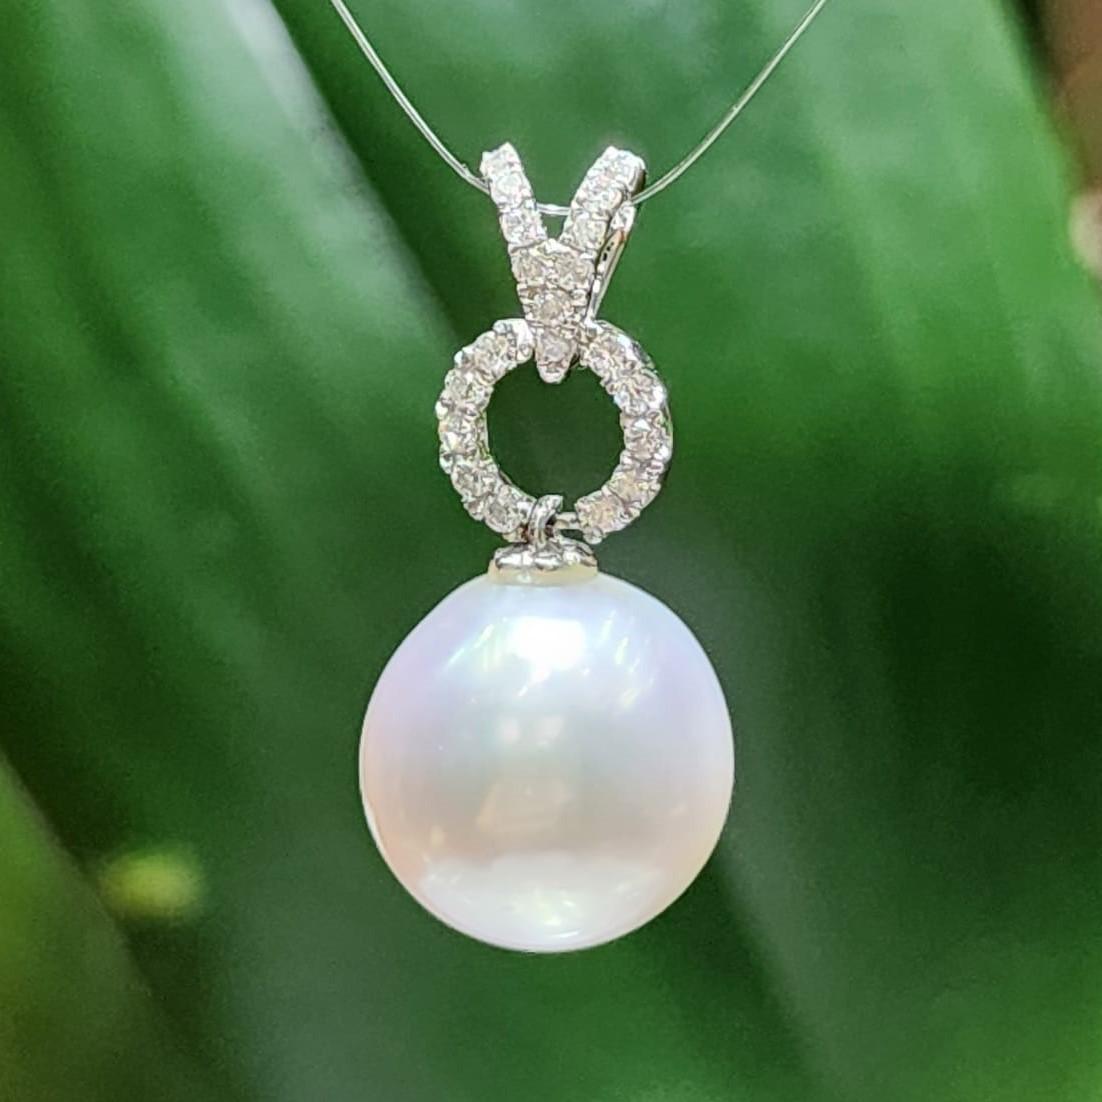 Le pendentif en or blanc 18 carats perles des mers du Sud et diamants est un superbe bijou qui respire la sophistication et le luxe. Sa pièce maîtresse est une magnifique perle des mers du Sud de 13 mm, connue pour son éclat lustré et son charme